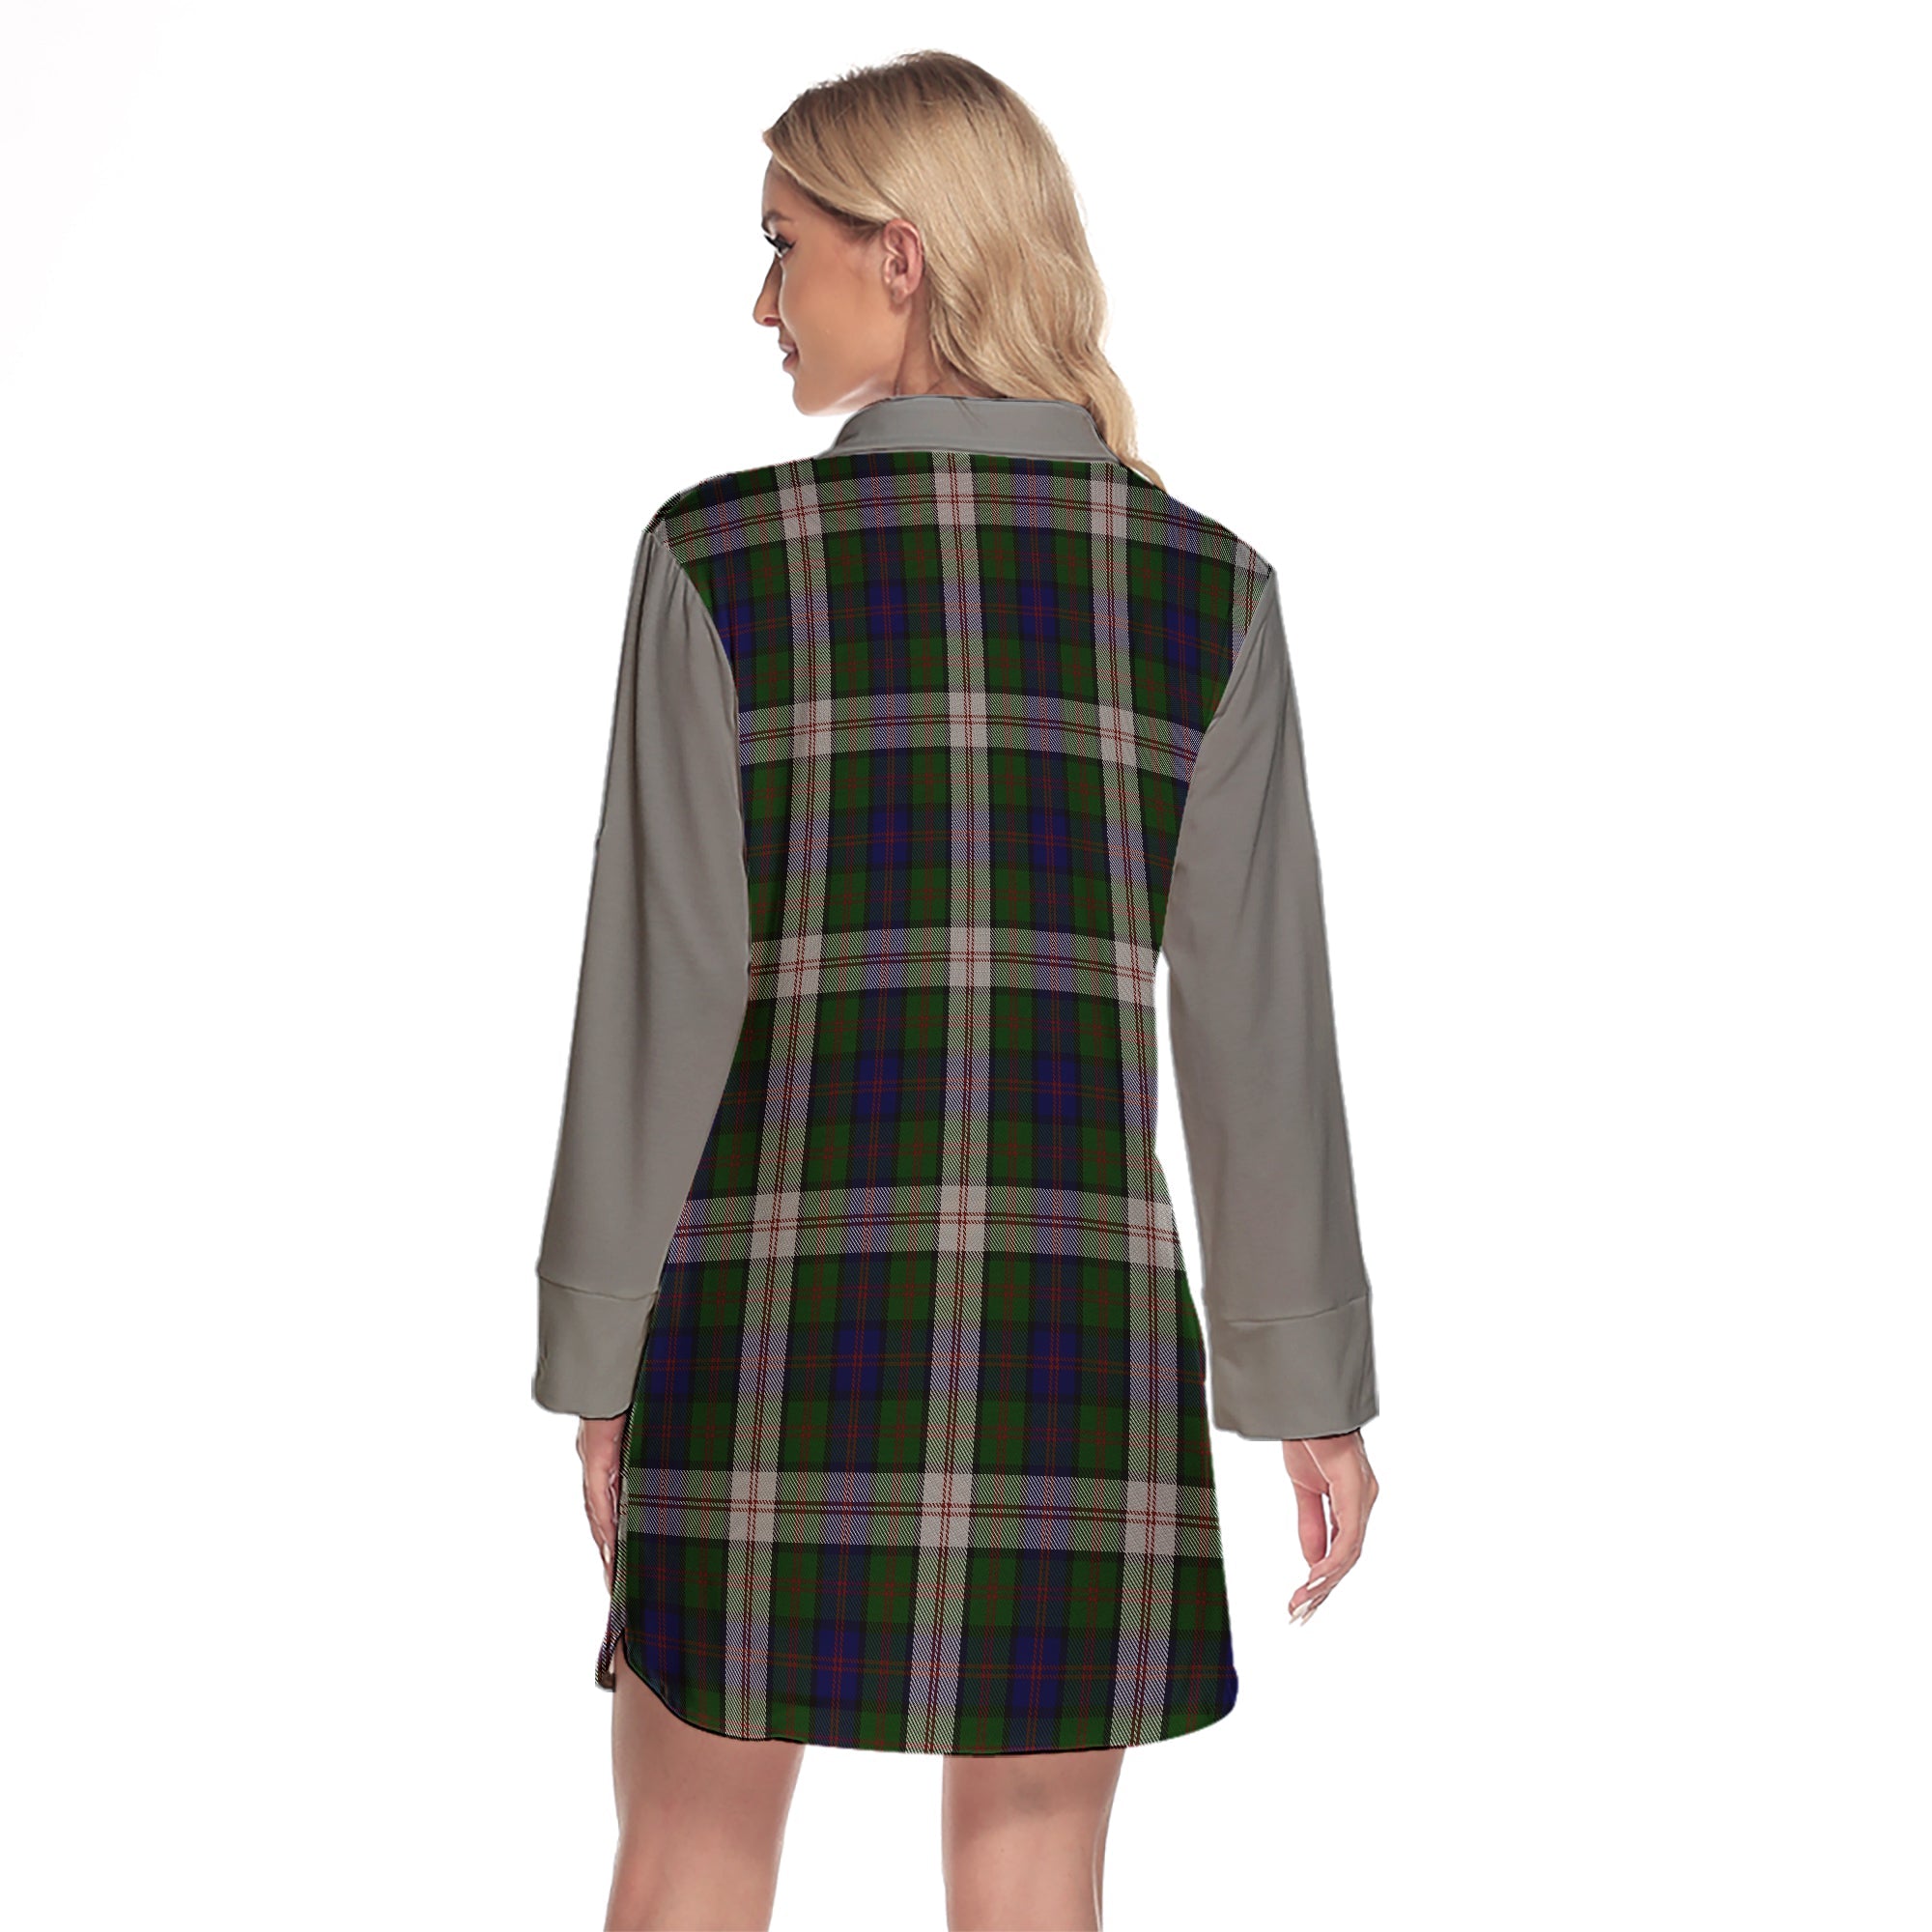 Blair Dress Tartan Women's Lapel Shirt Dress With Long Sleeve